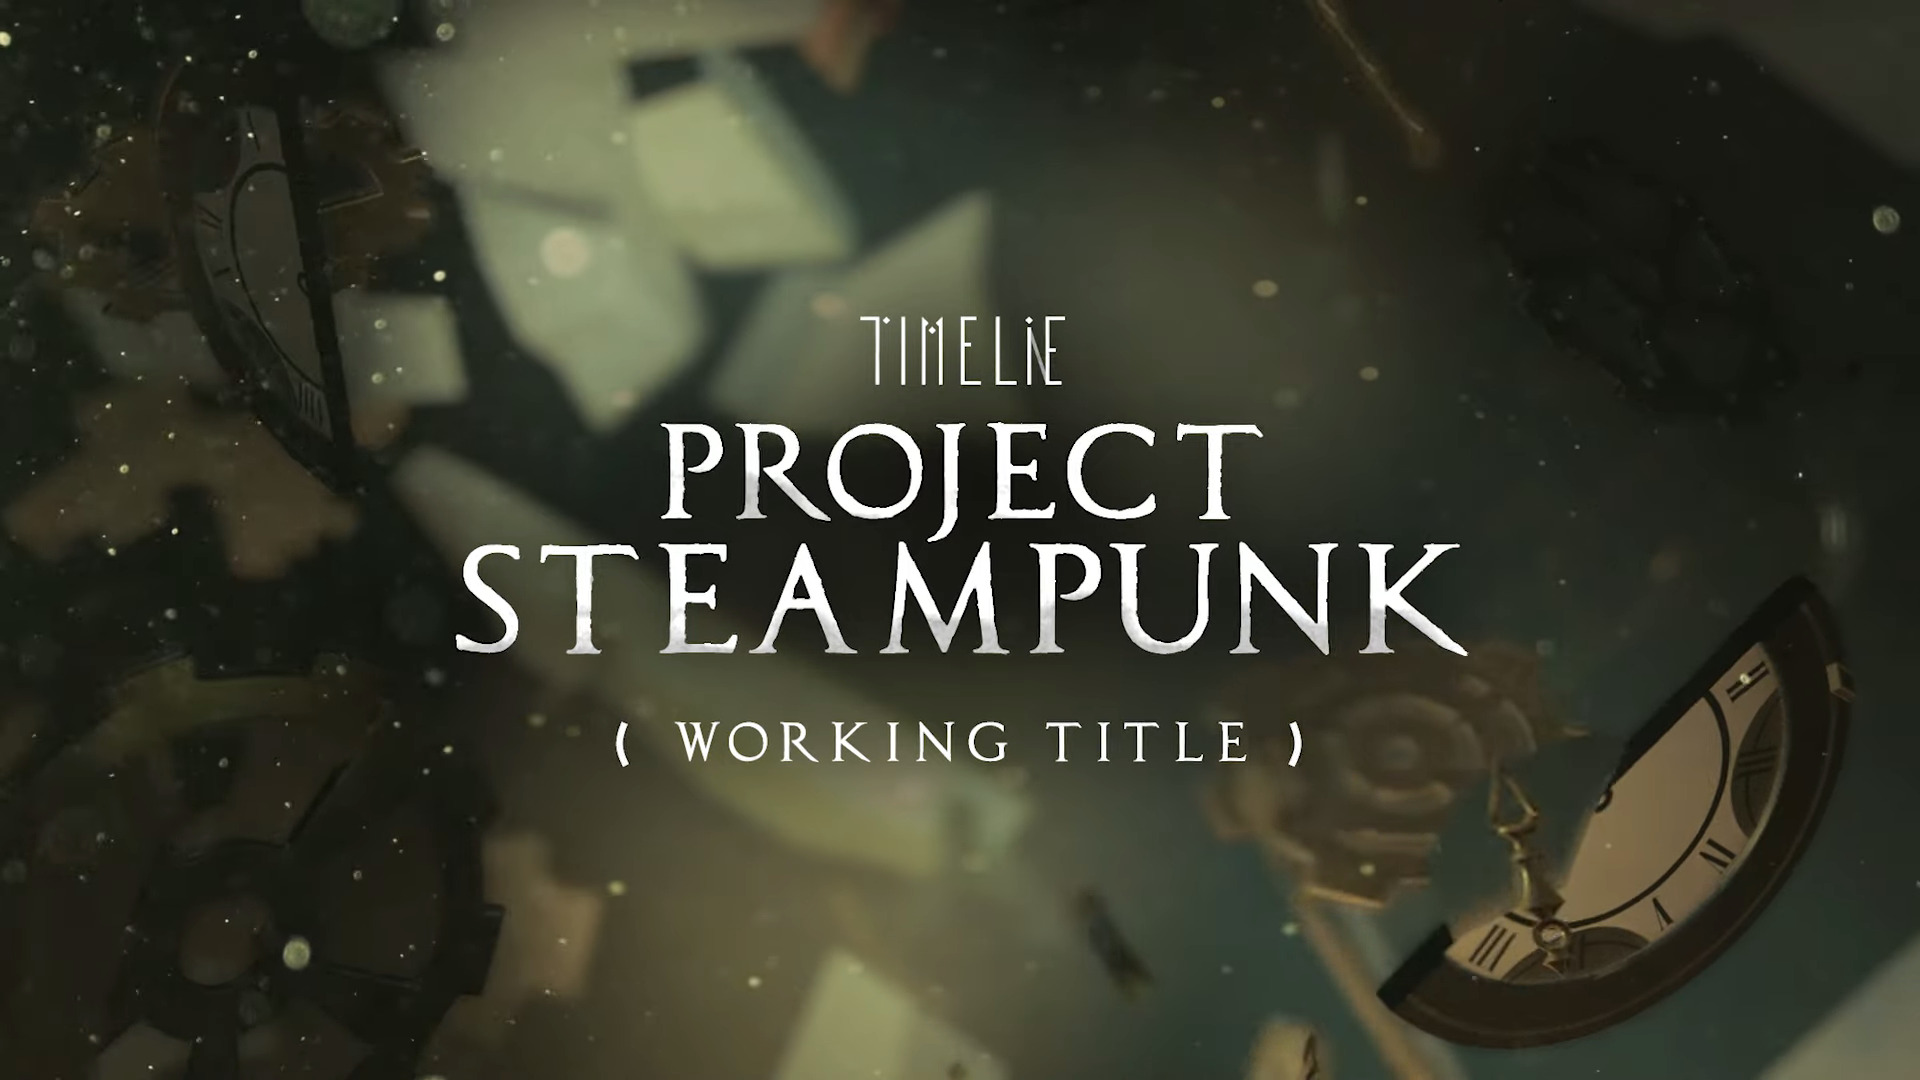 เปิดตัว Timelie: Project Steampunk ภาคแยกของ Timelie